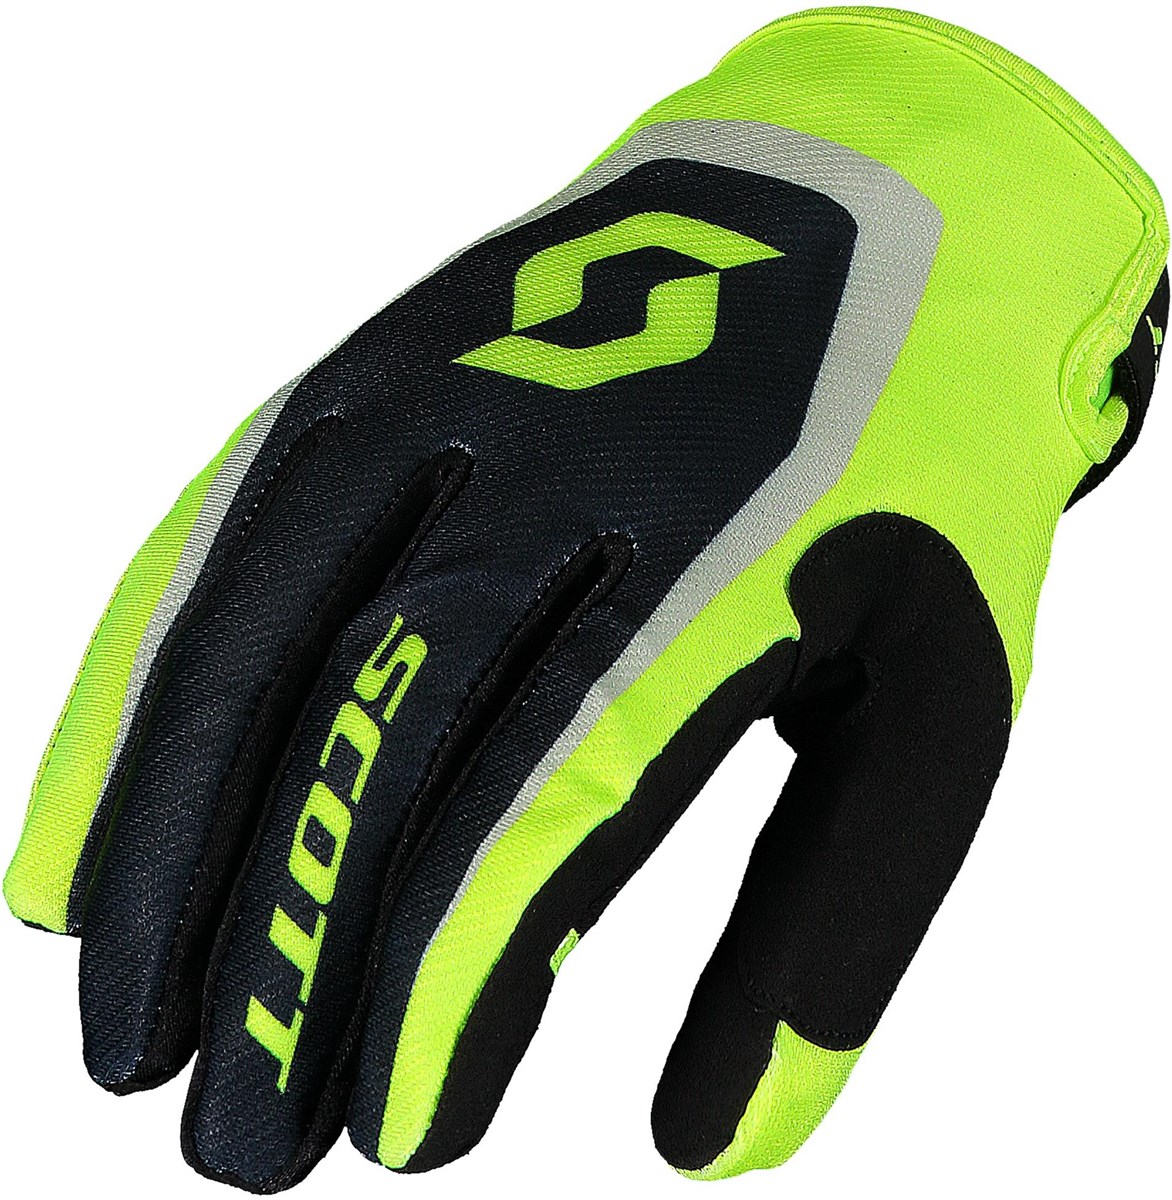 Scott 350 Dirt Long Finger Kids Gloves product image